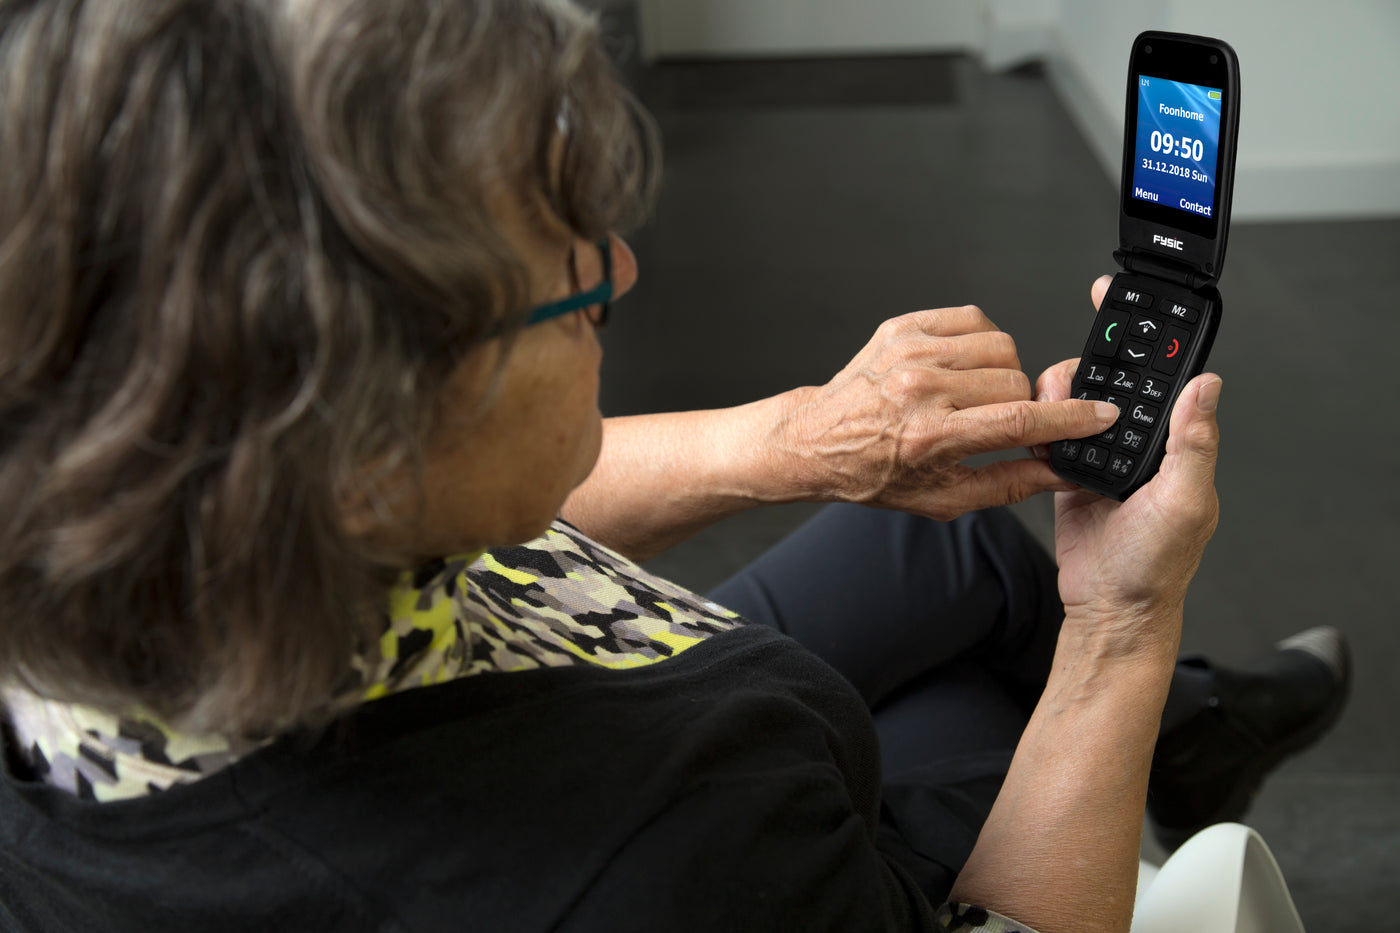 Fysic FM-9260 - Eenvoudige mobiele klaptelefoon voor senioren met SOS paniekknop, zwart